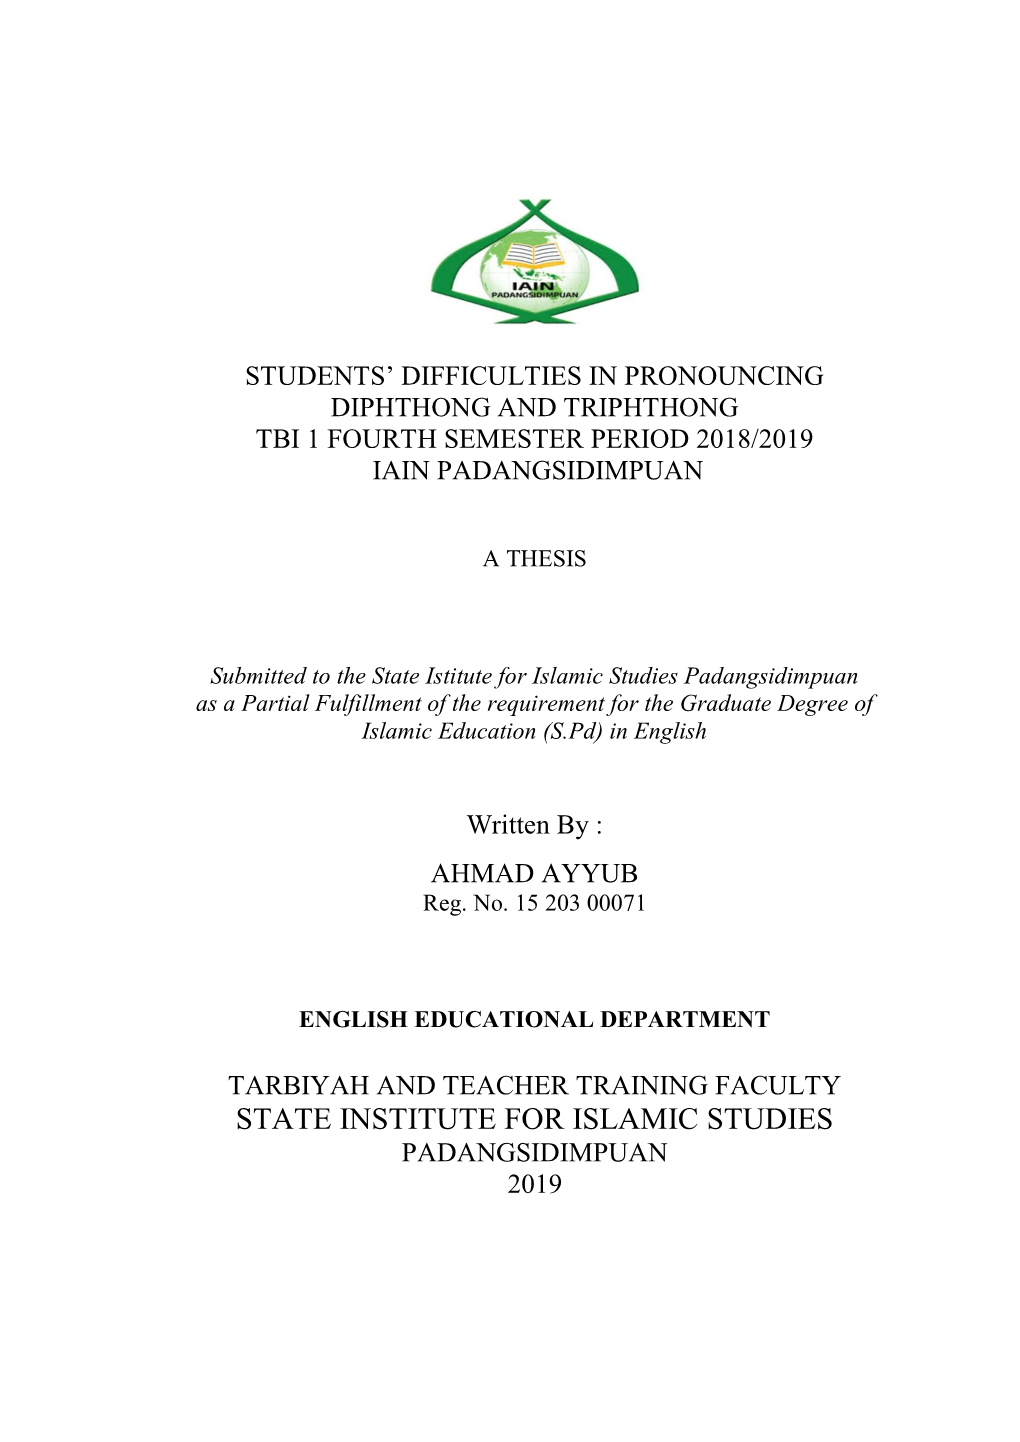 State Institute for Islamic Studies Padangsidimpuan 2019